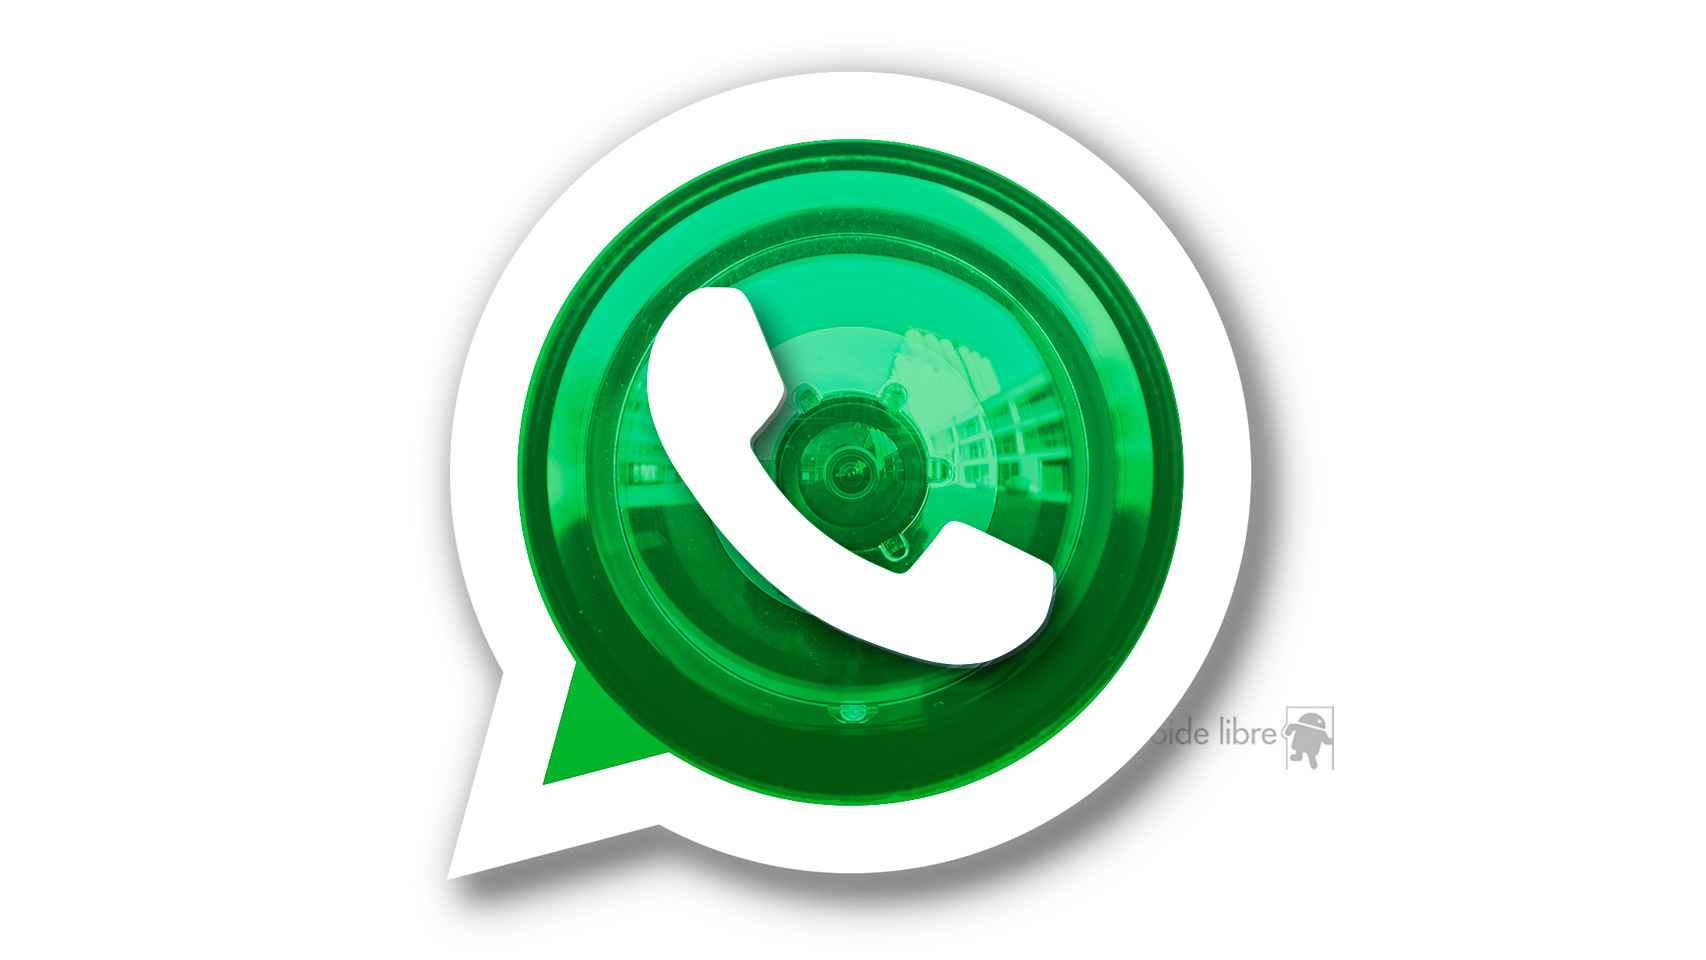 Llega el control granular a WhatsApp: elige quién puede ver tu foto, última conexión y más